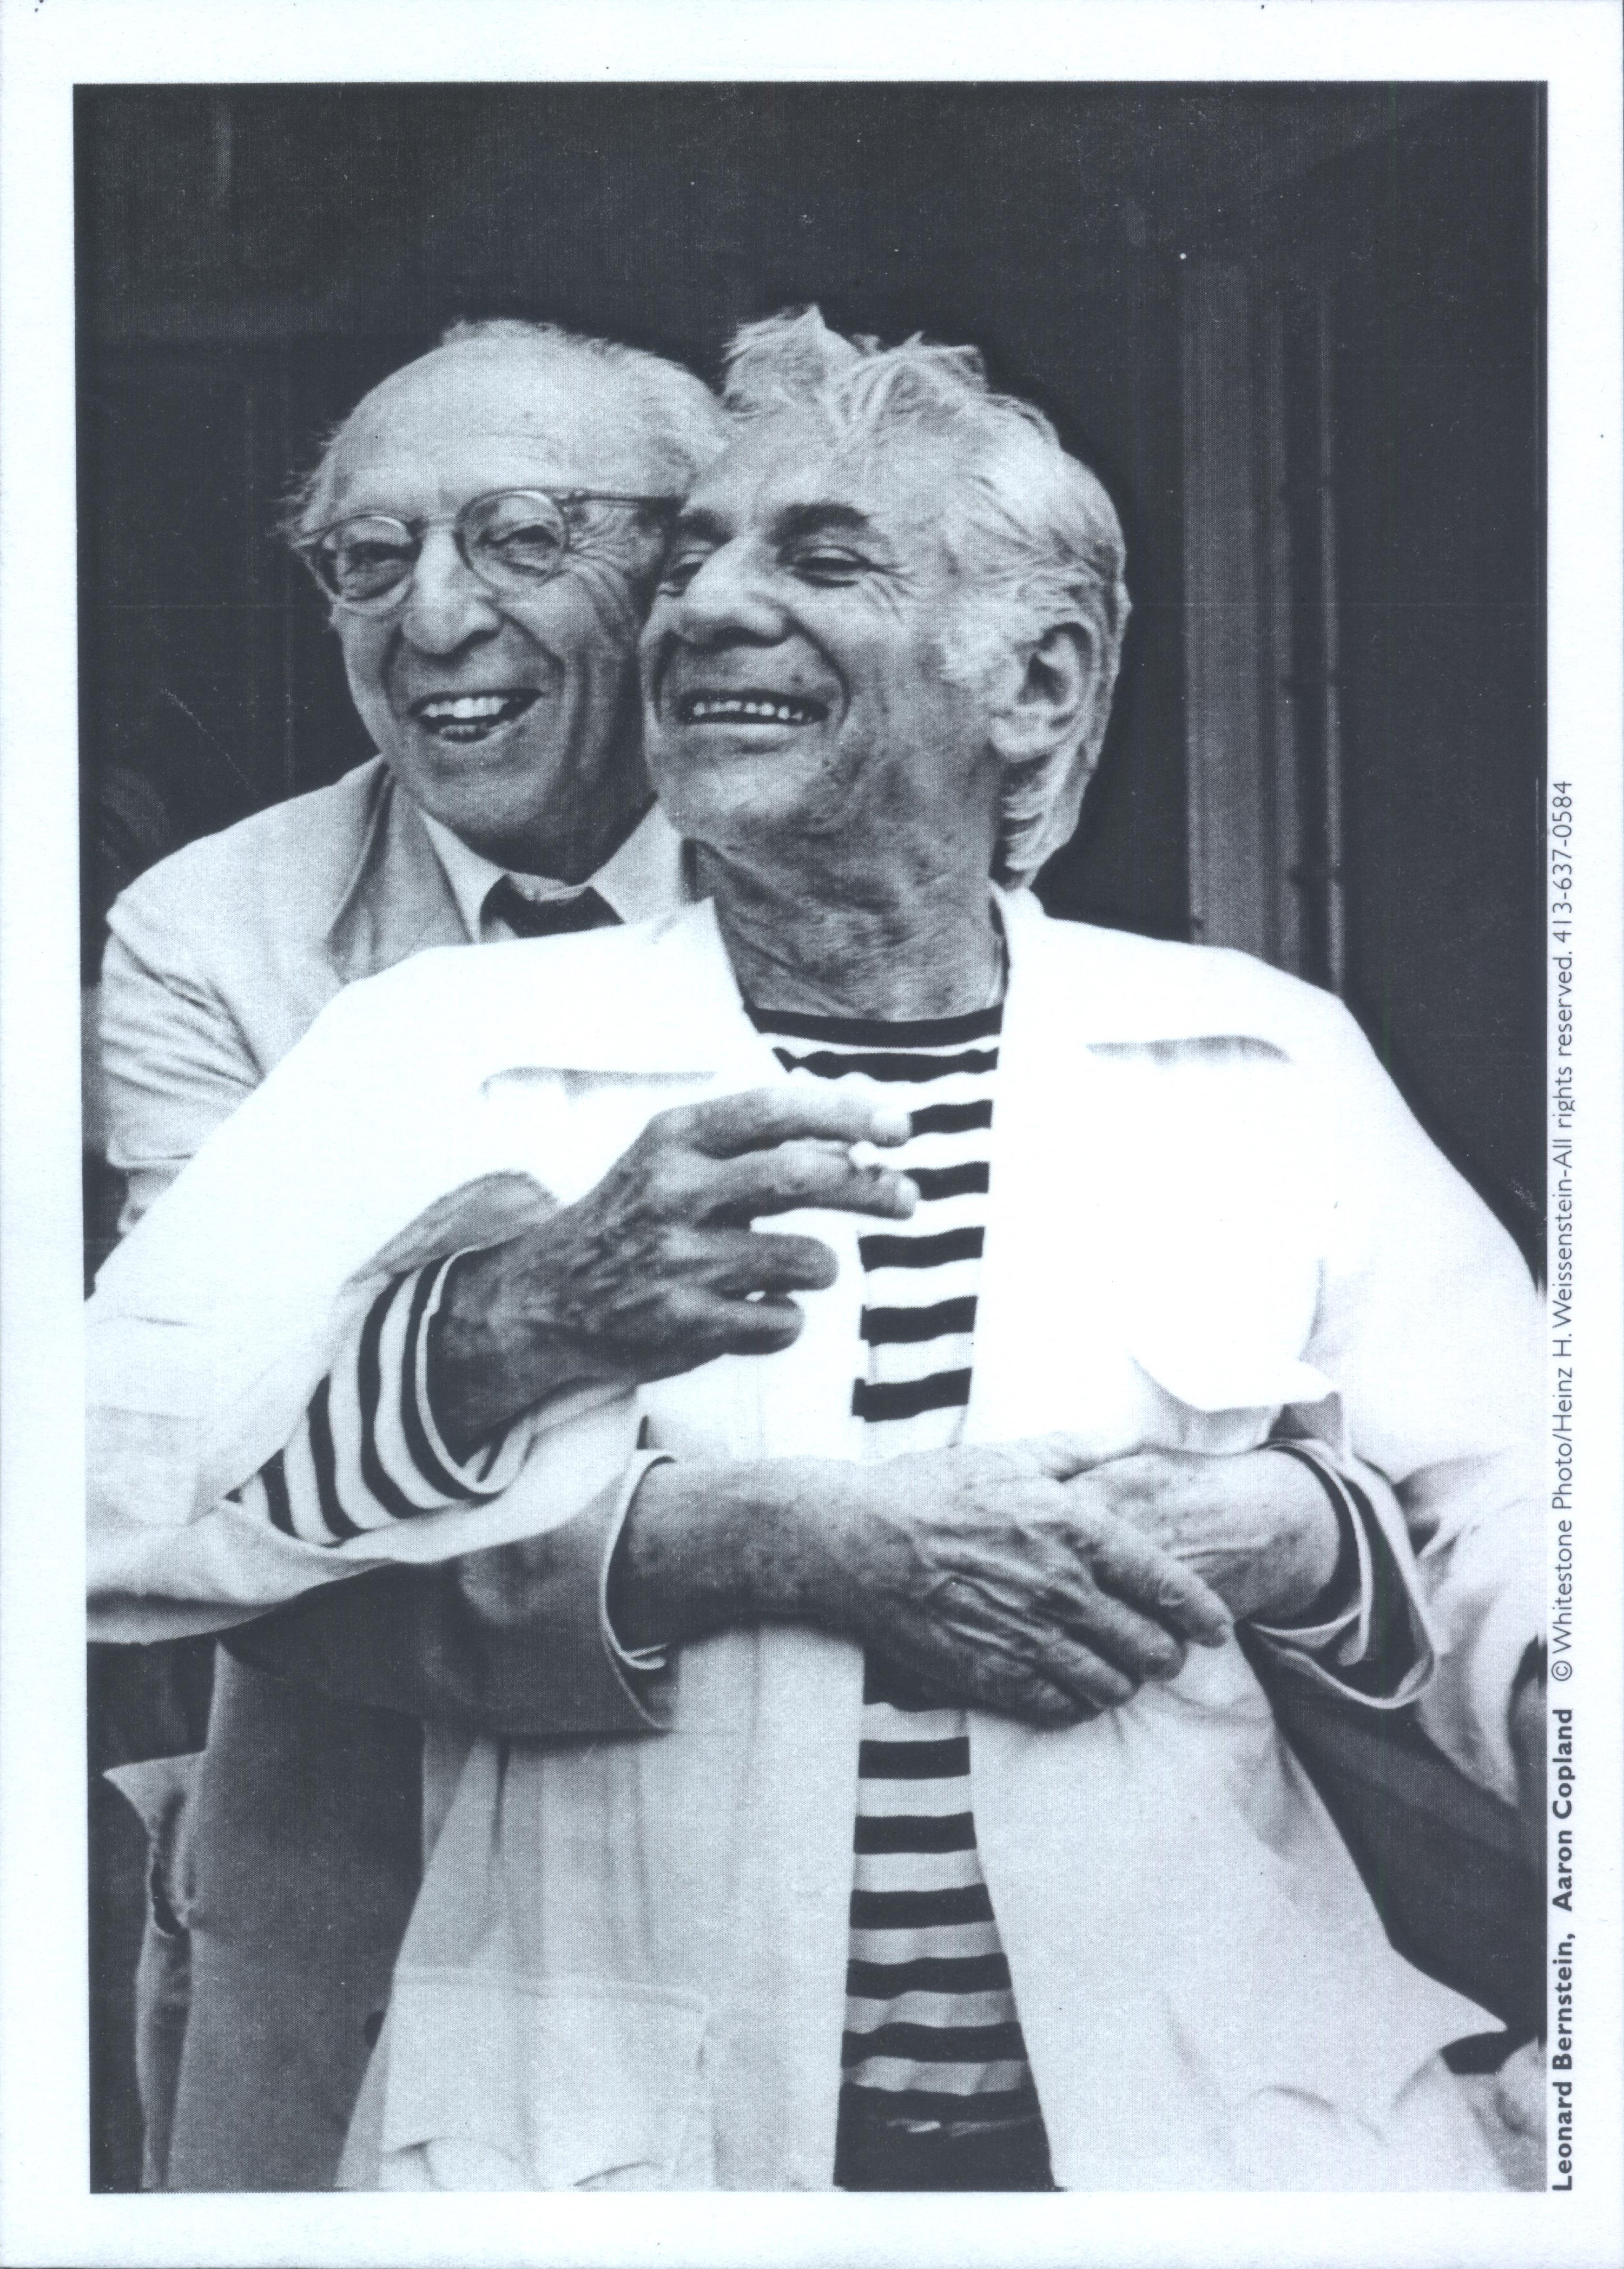 Aaron Copland hugs Leonard Bernstein. Both men are smiling.